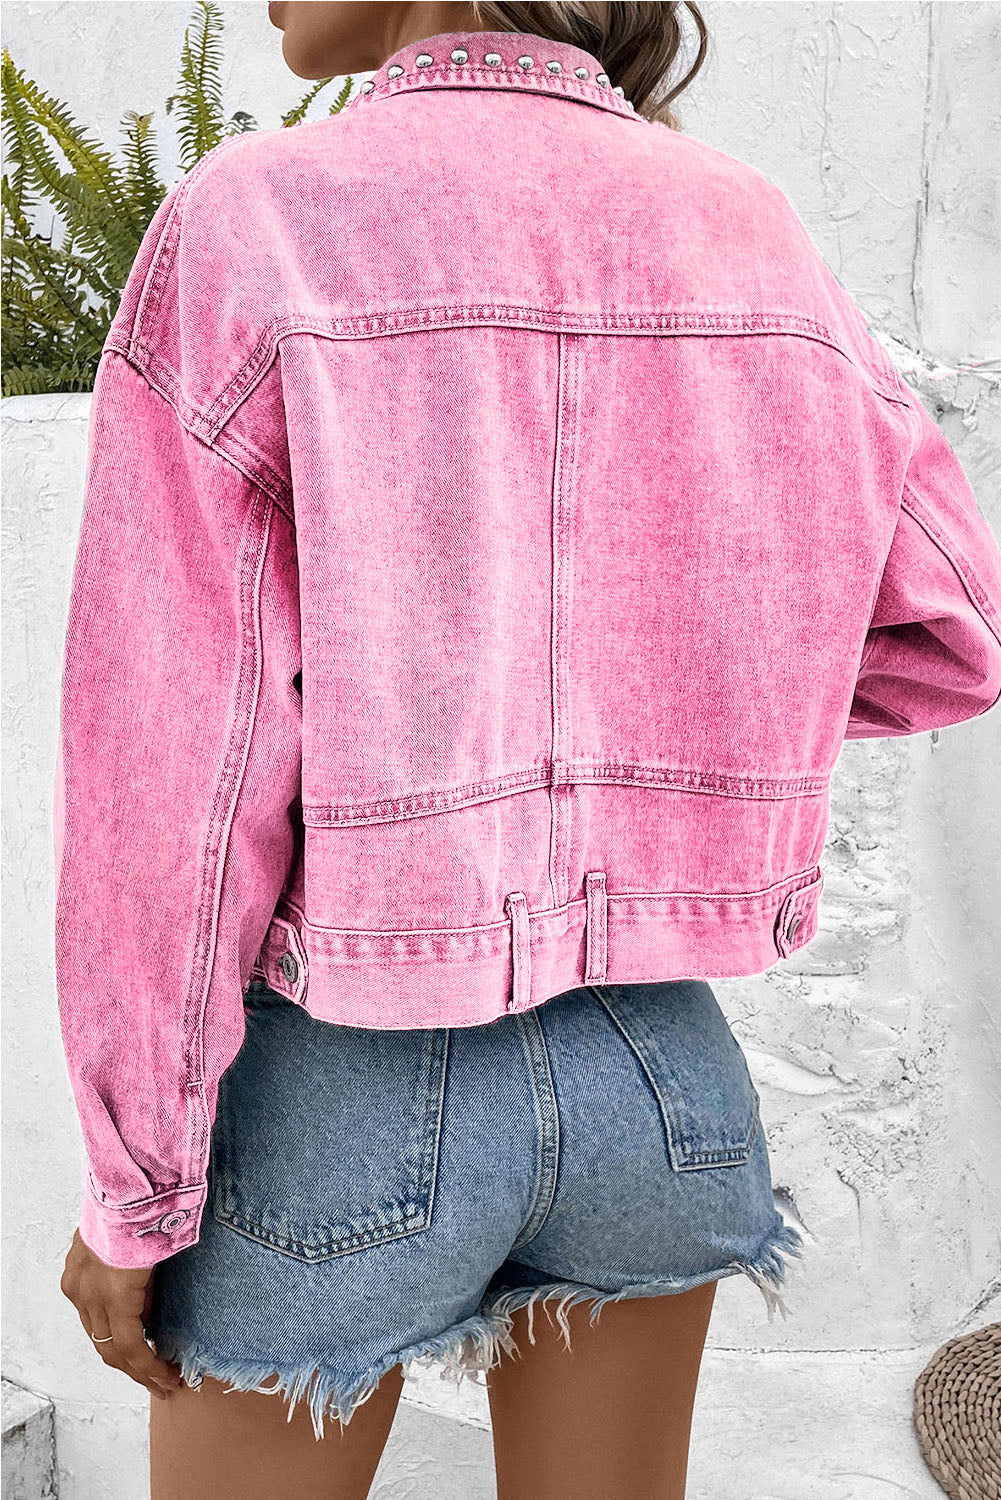 Barbie Style Pink Rivet Studded Pocketed Denim Jacket Outerwear JT's Designer Fashion